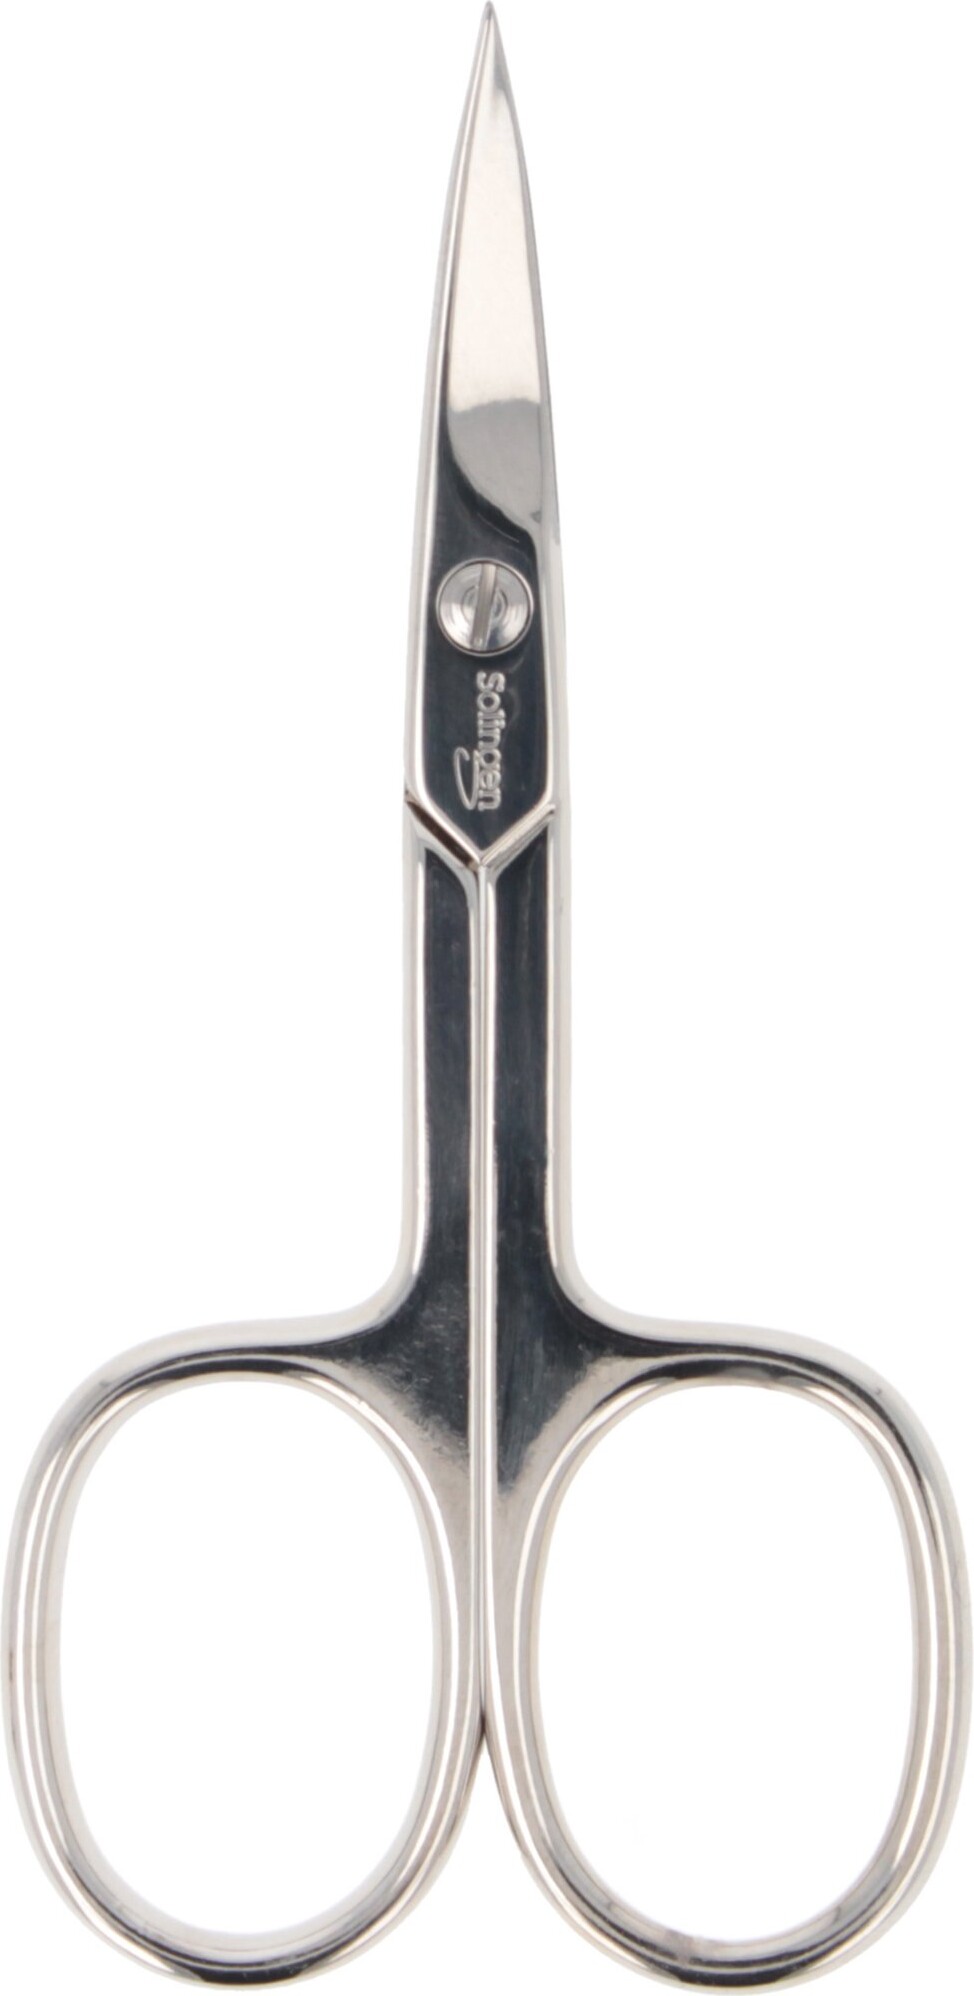 Billede af Parsa - Beauty Scissor With Curved Cutting Edges Steel